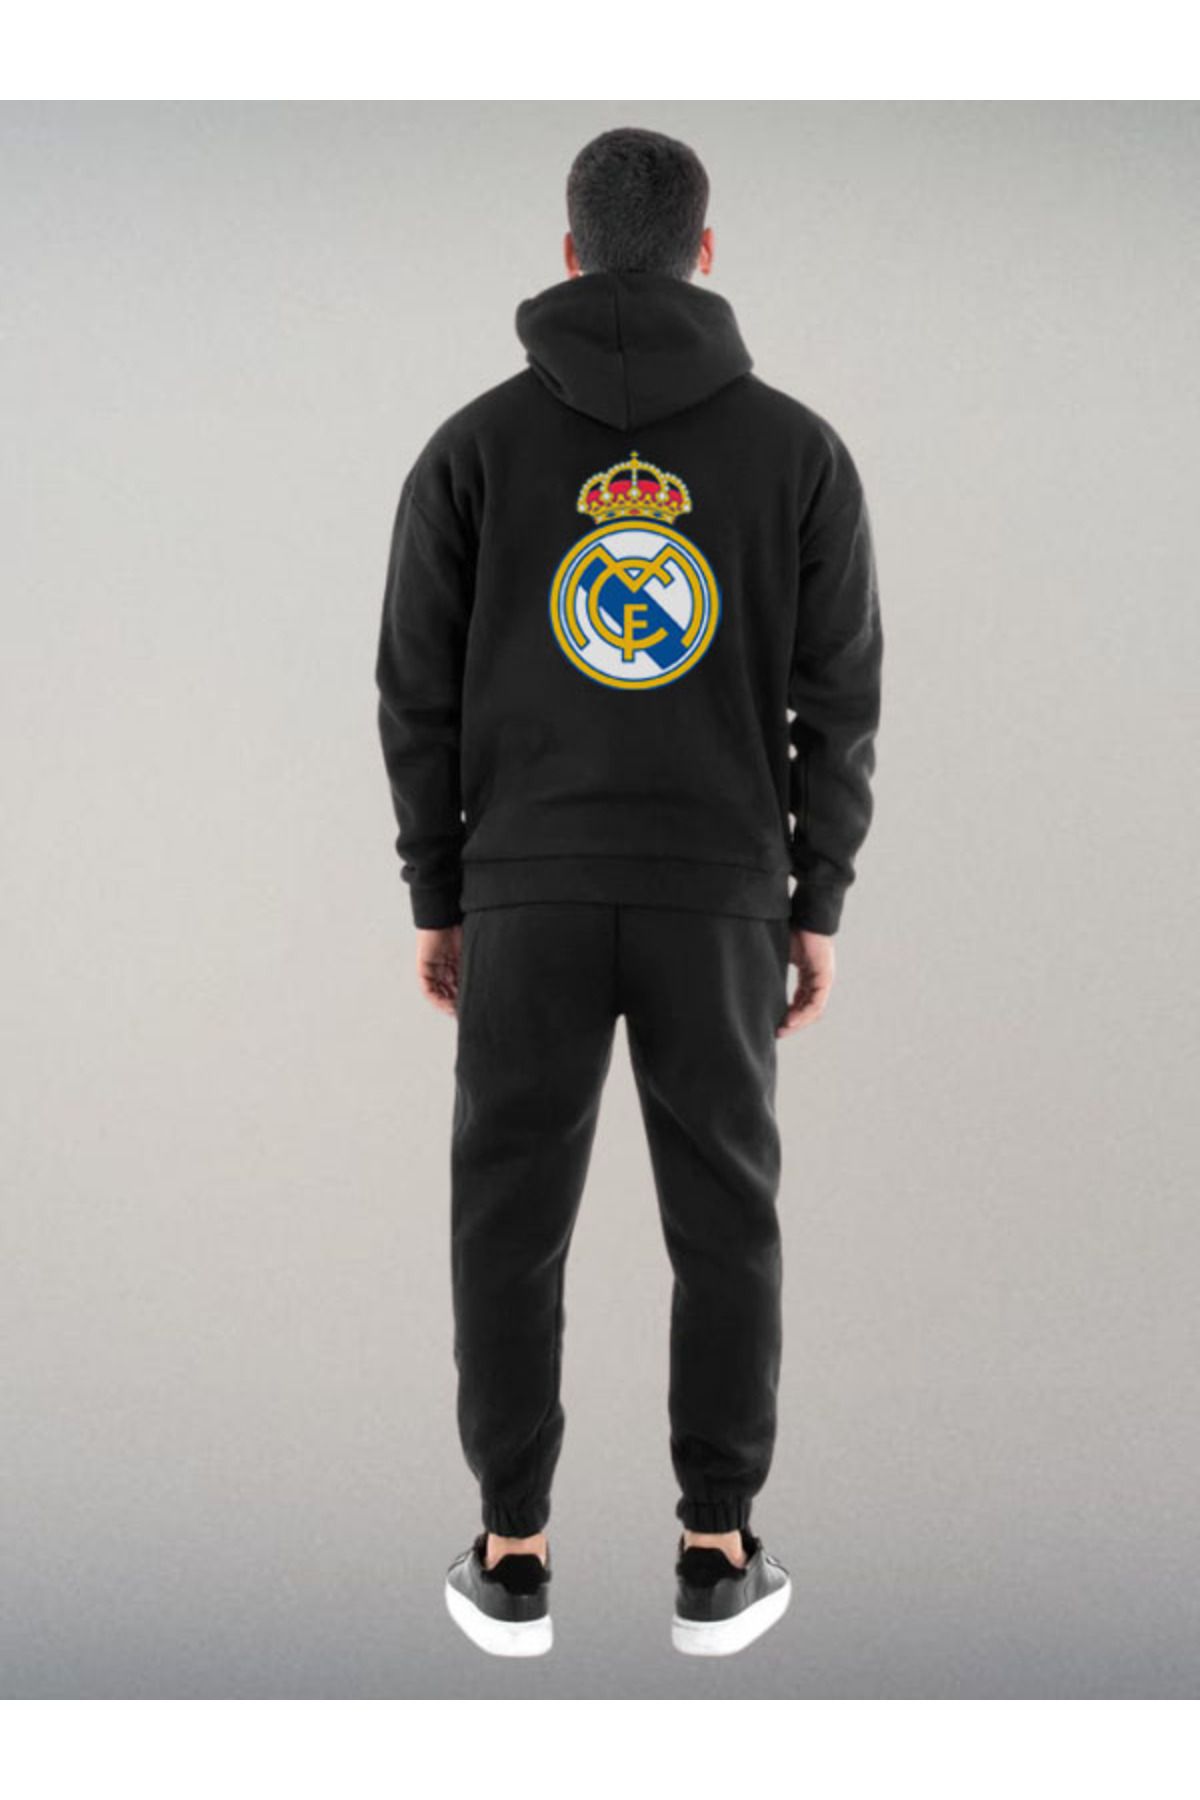 Darkia Real Madrid Futbol Takımı Özel Tasarım Baskılı Kapşonlu Sweatshirt Hoodie Spor Eşofman Takımı